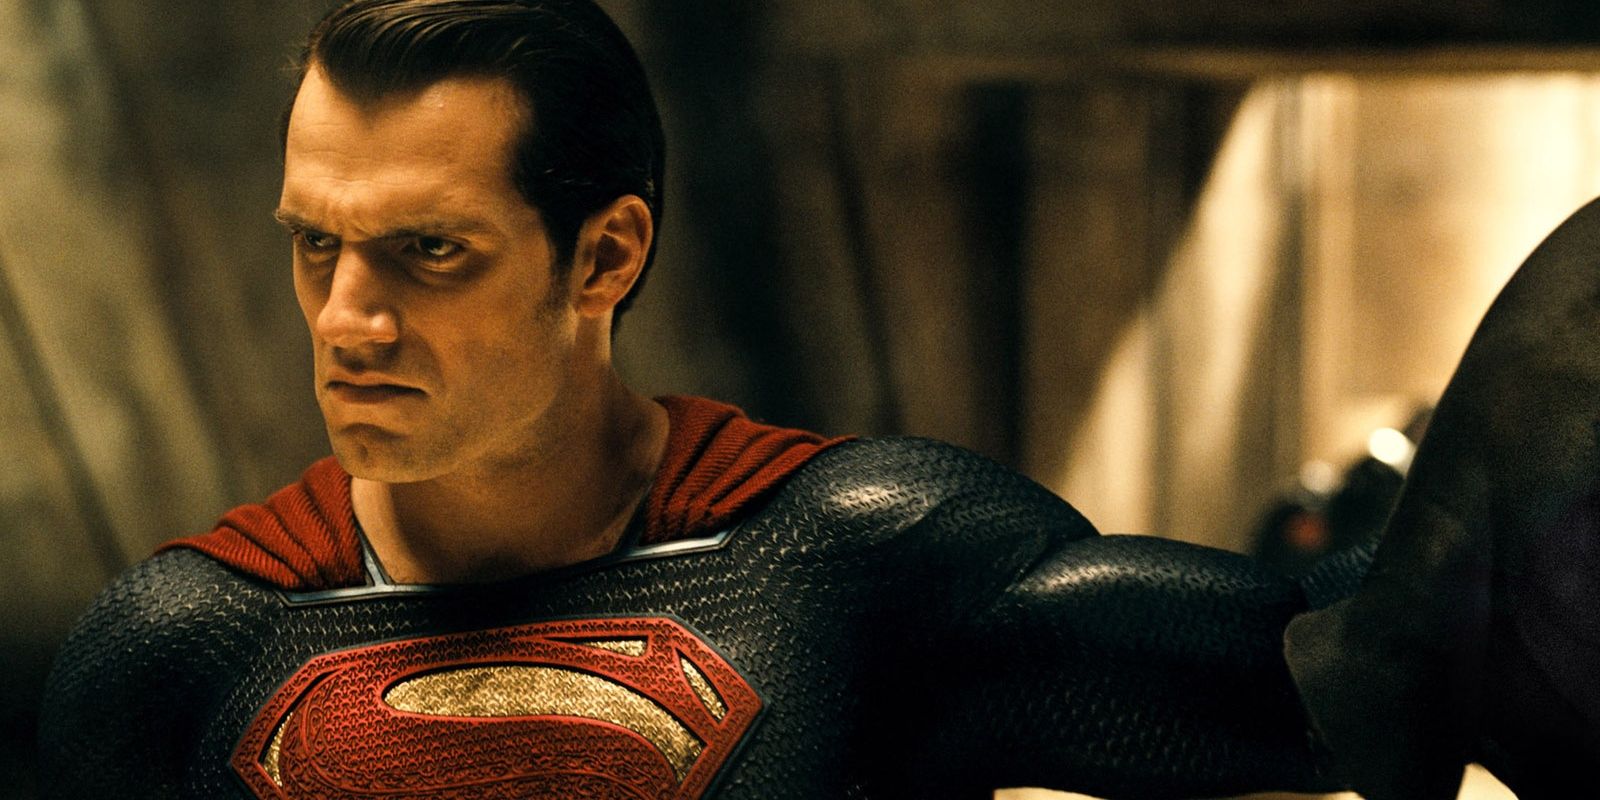 Henry Cavill as the Man of Steel in Batman v Superman